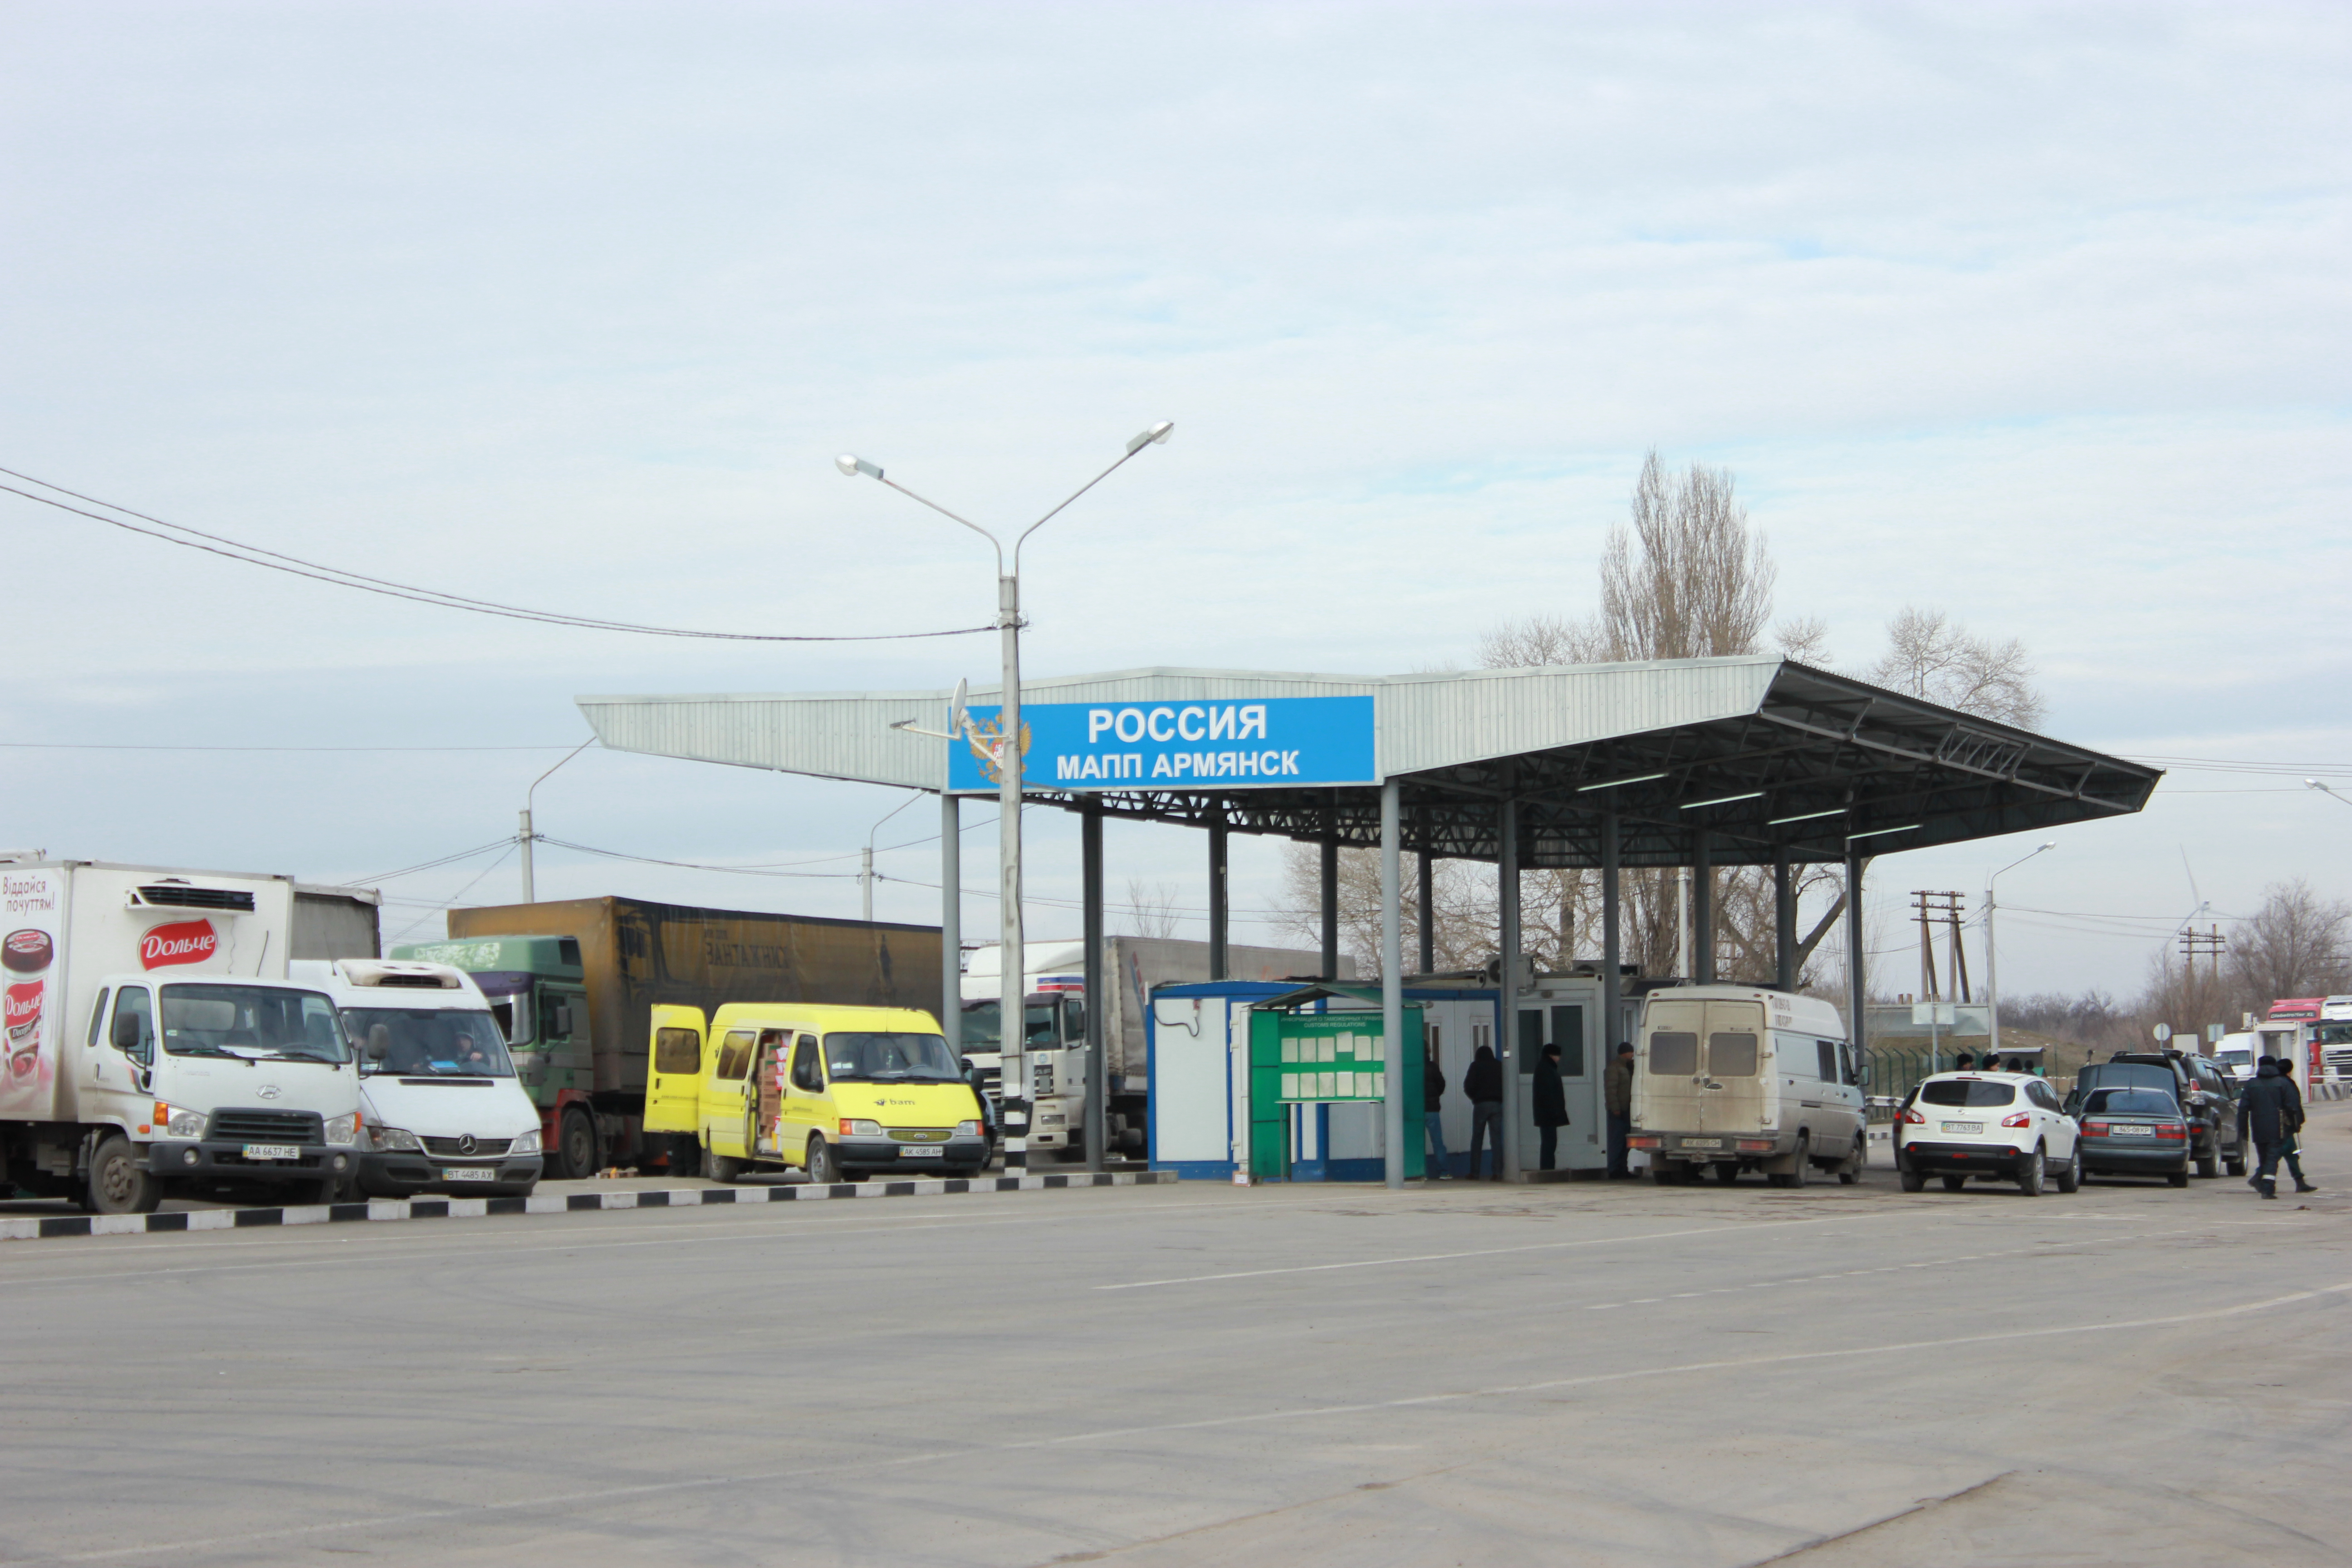 В Меджлисе связывают допросы крымских татар с делом о блокаде